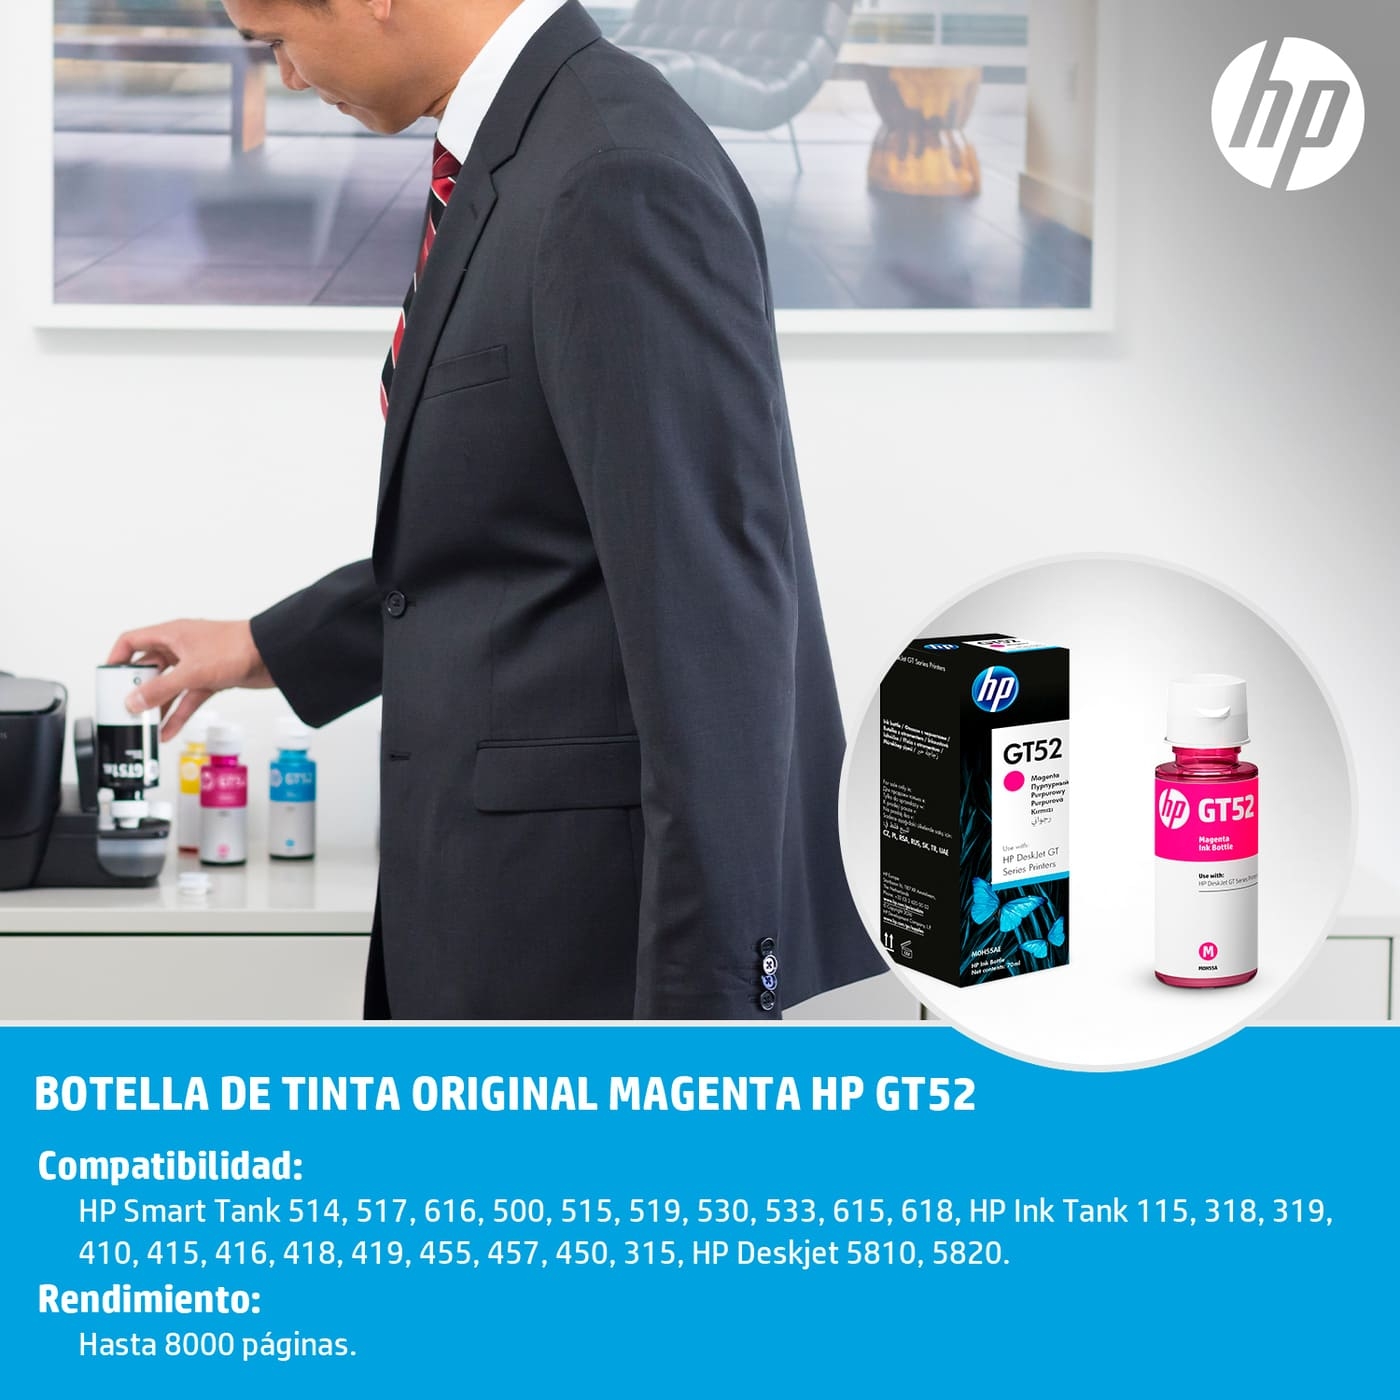 Botella de Tinta HP GT52 Magenta